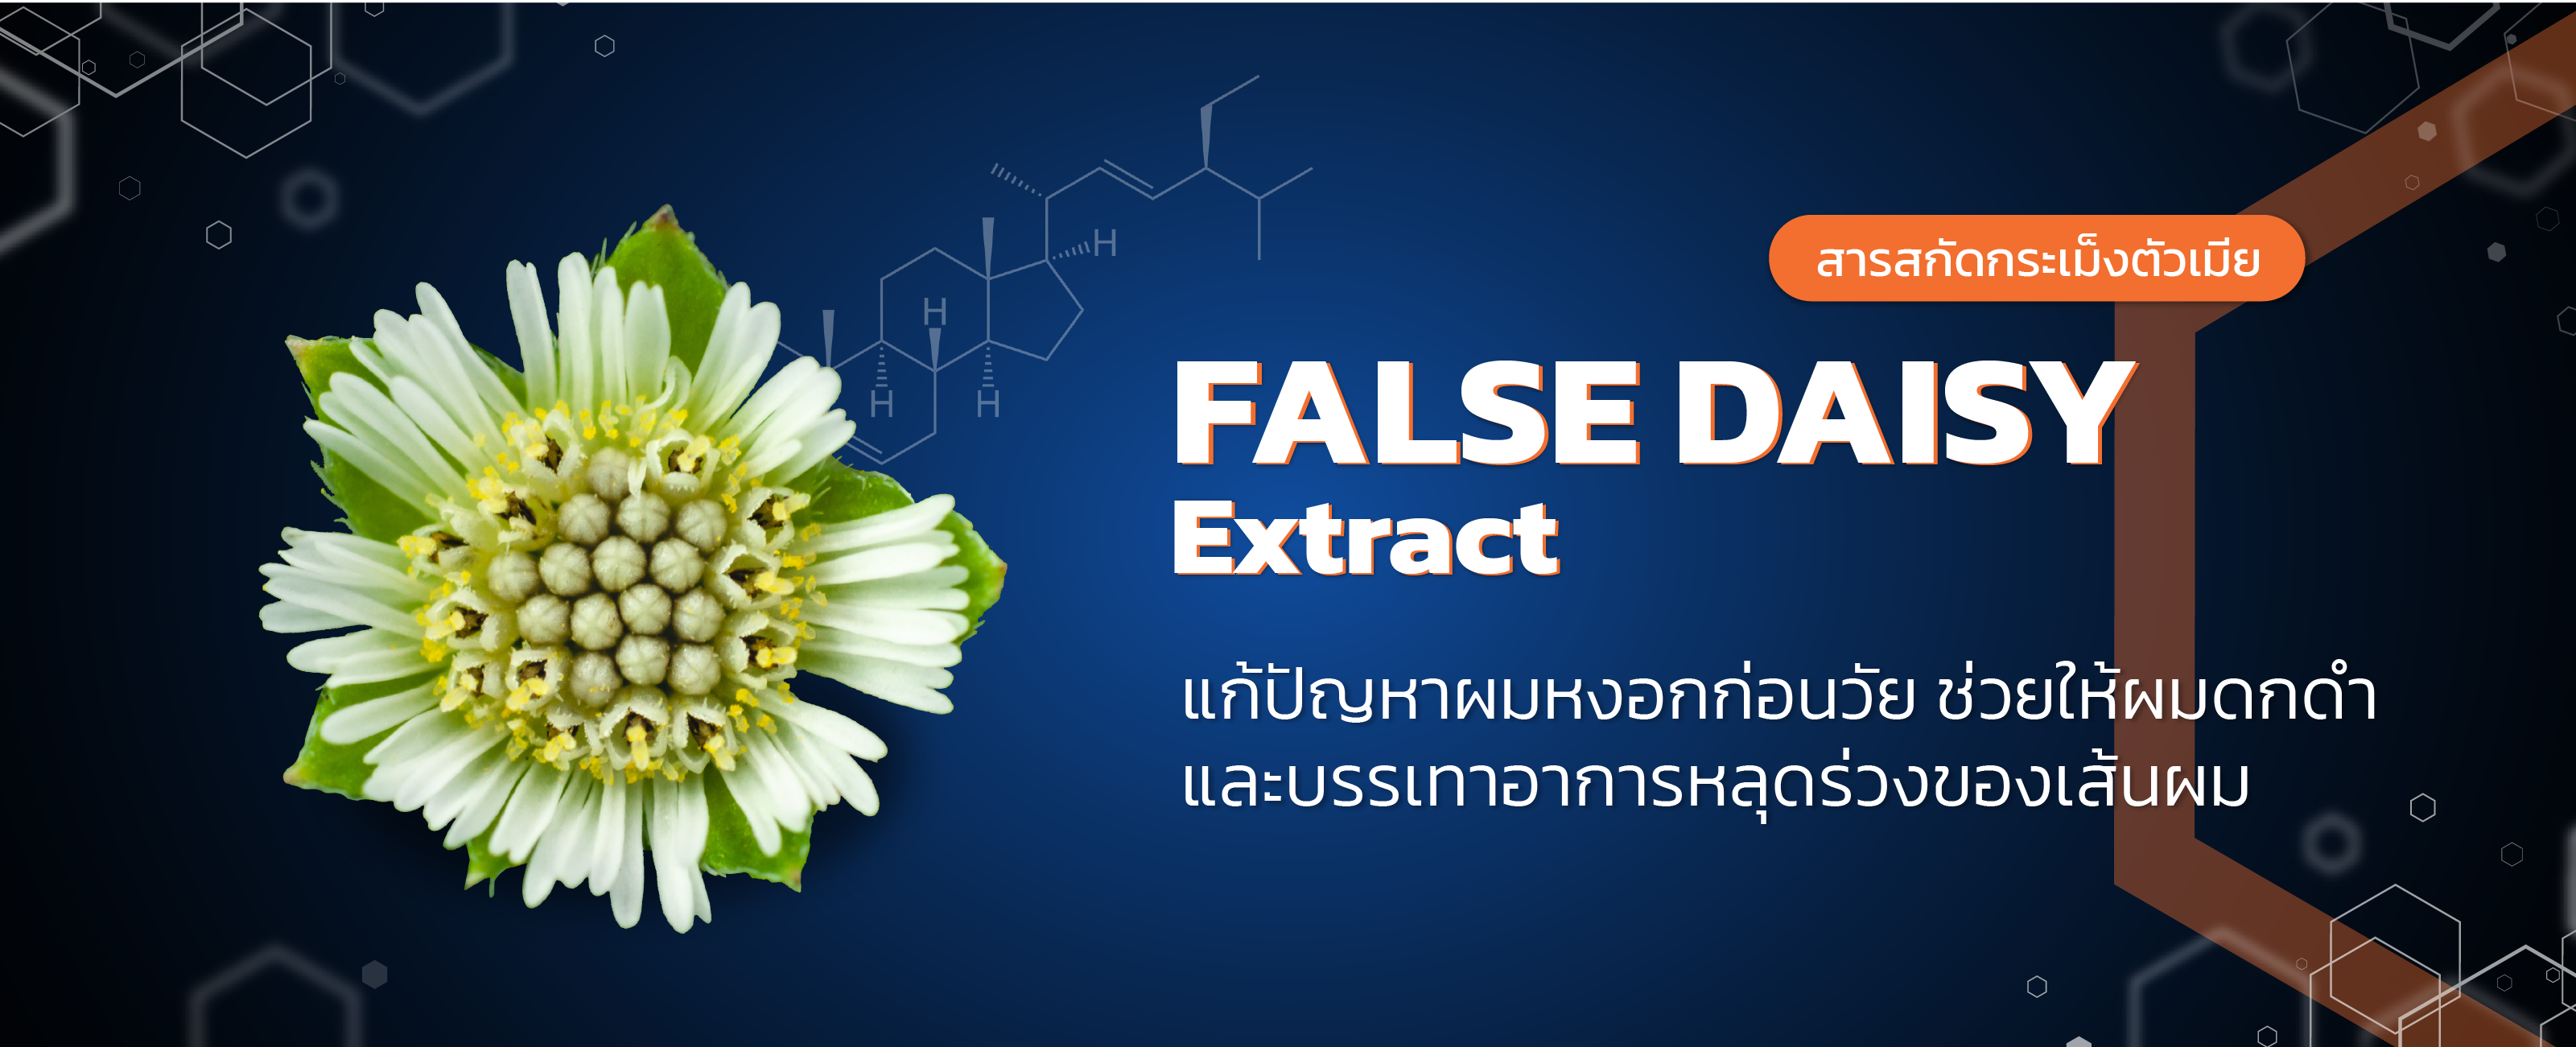 สารสกัดกระเม็งตัวเมีย (False Daisy Extract)